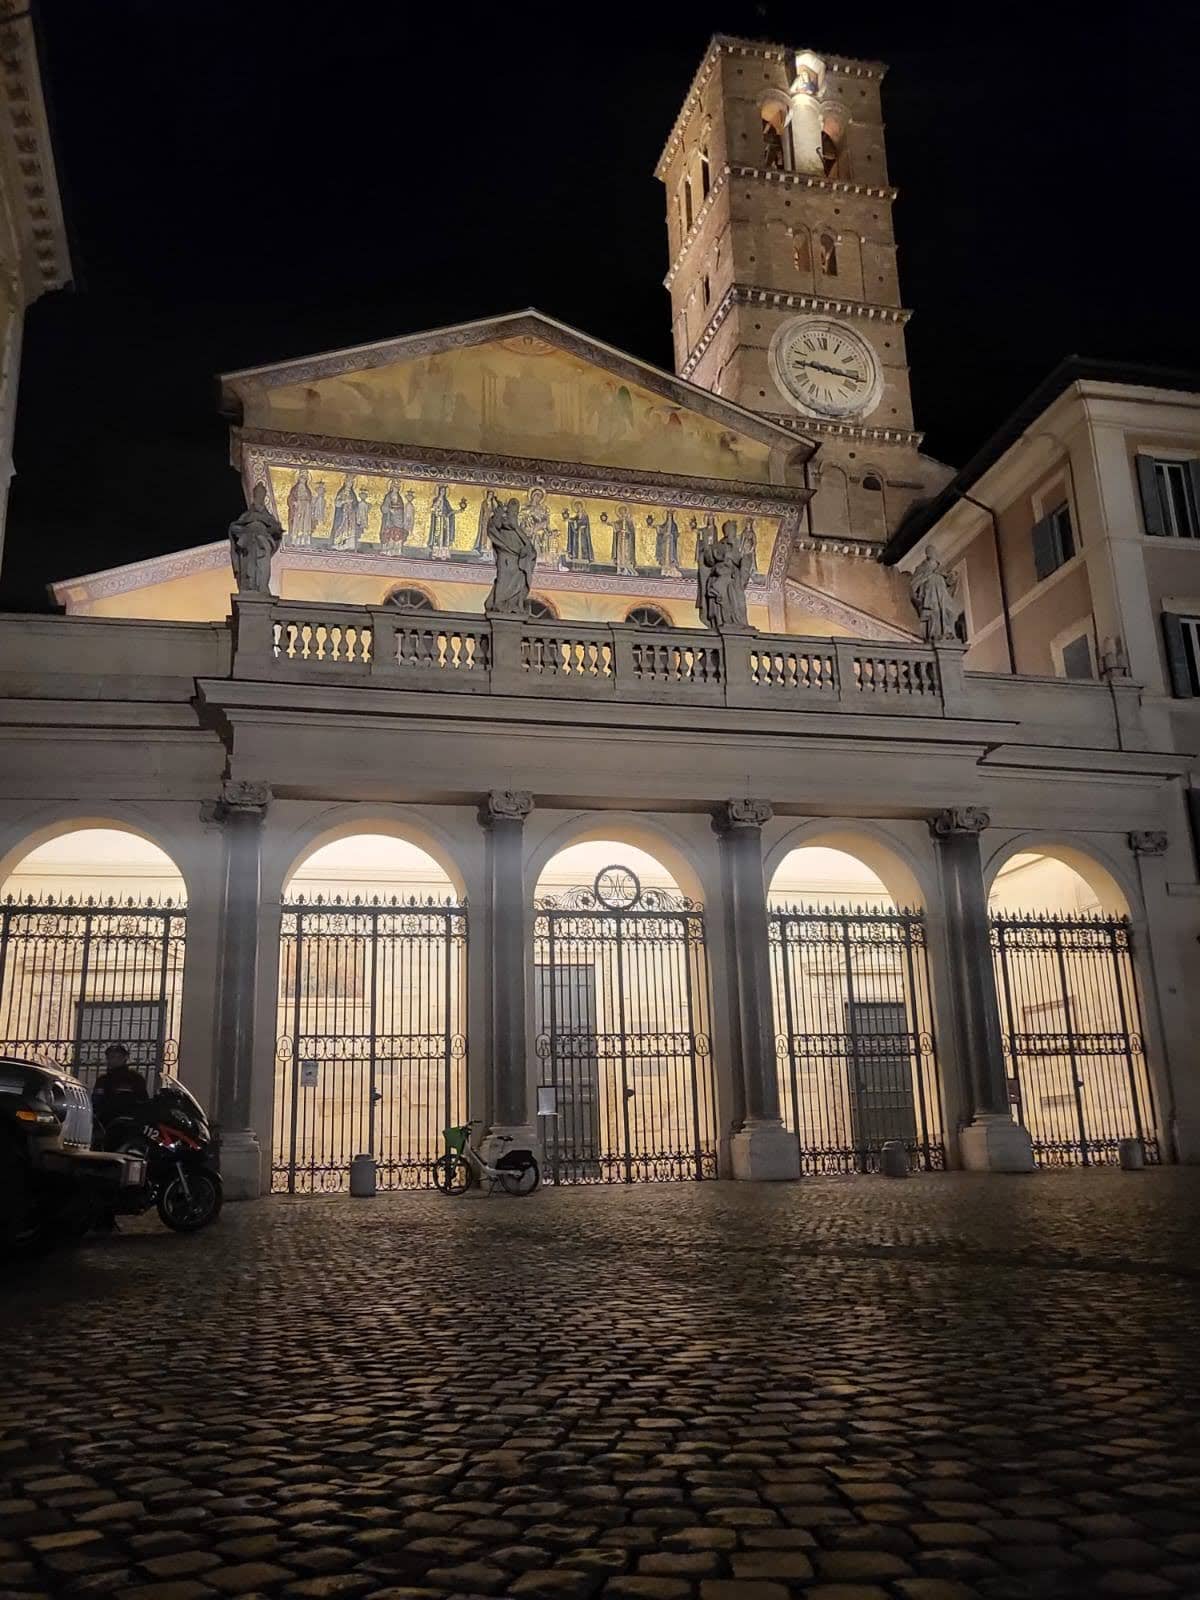 Vista noturna da fachada iluminada e da torre do sino da Basílica de Santa Maria em Trastevere, Roma, com estátuas clássicas em primeiro plano, destacando os mosaicos dourados intrincados e a arquitetura histórica da igreja.